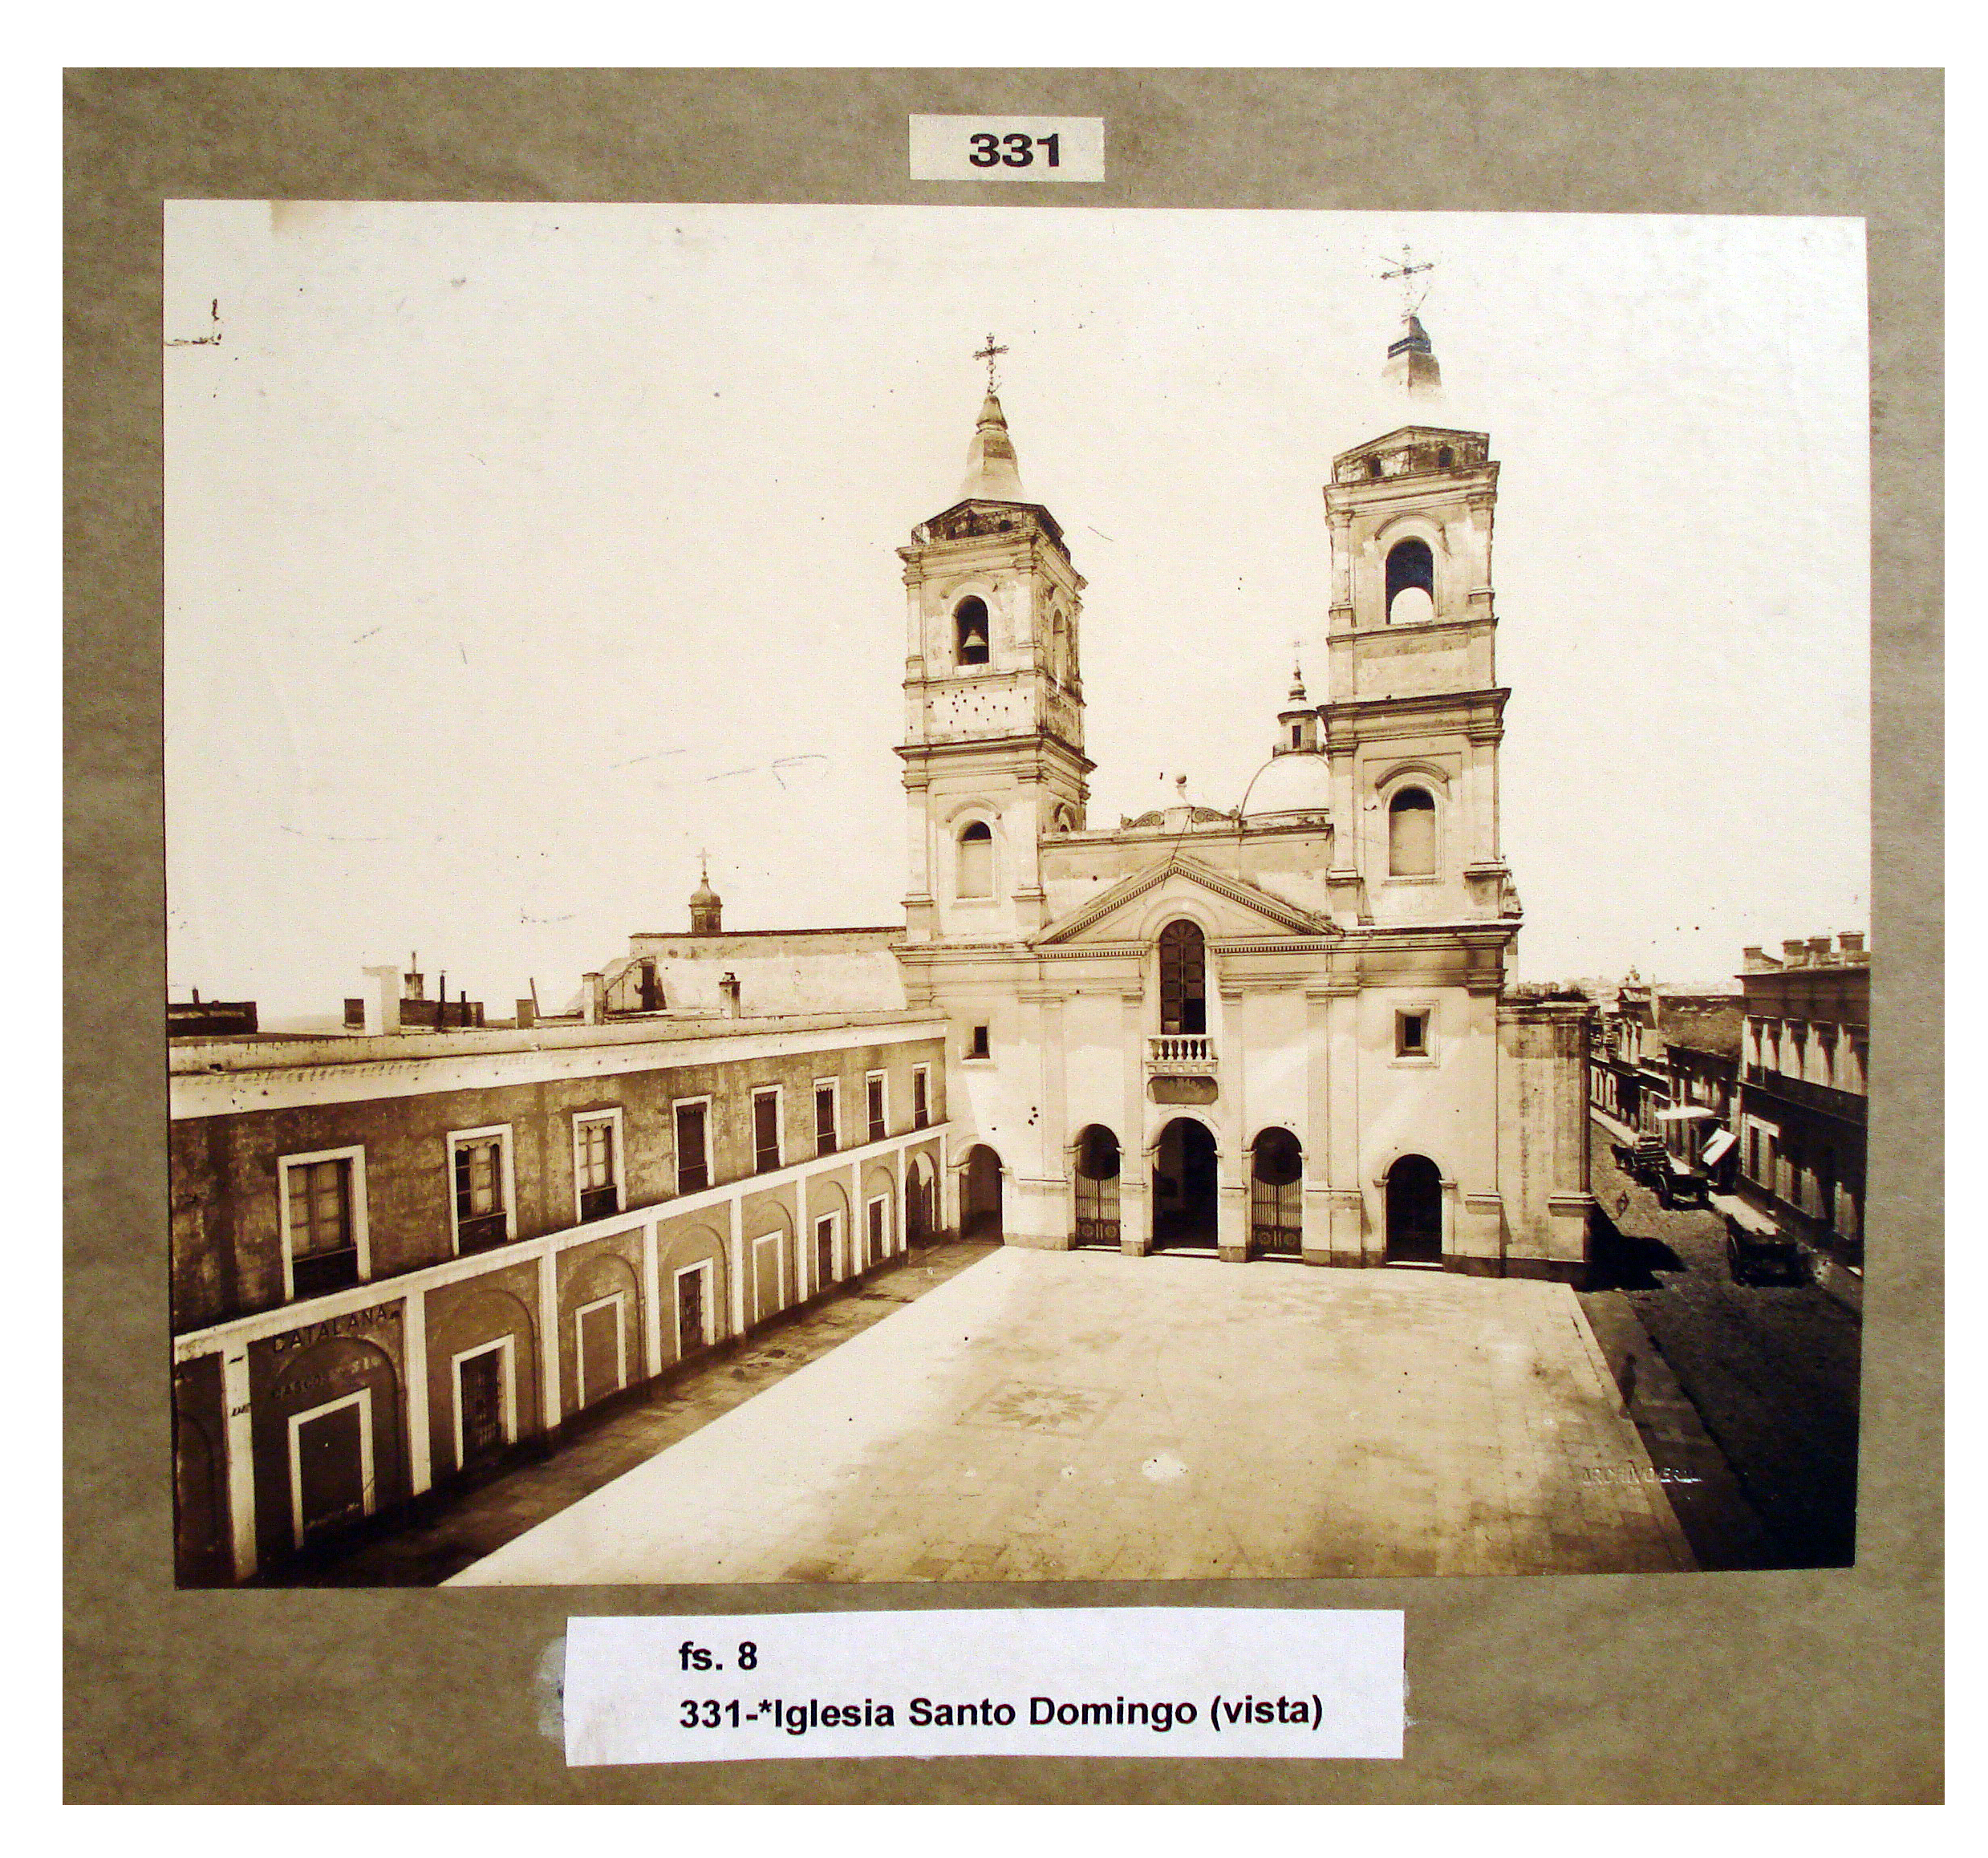 Vistade la iglesia de Santo Domingo